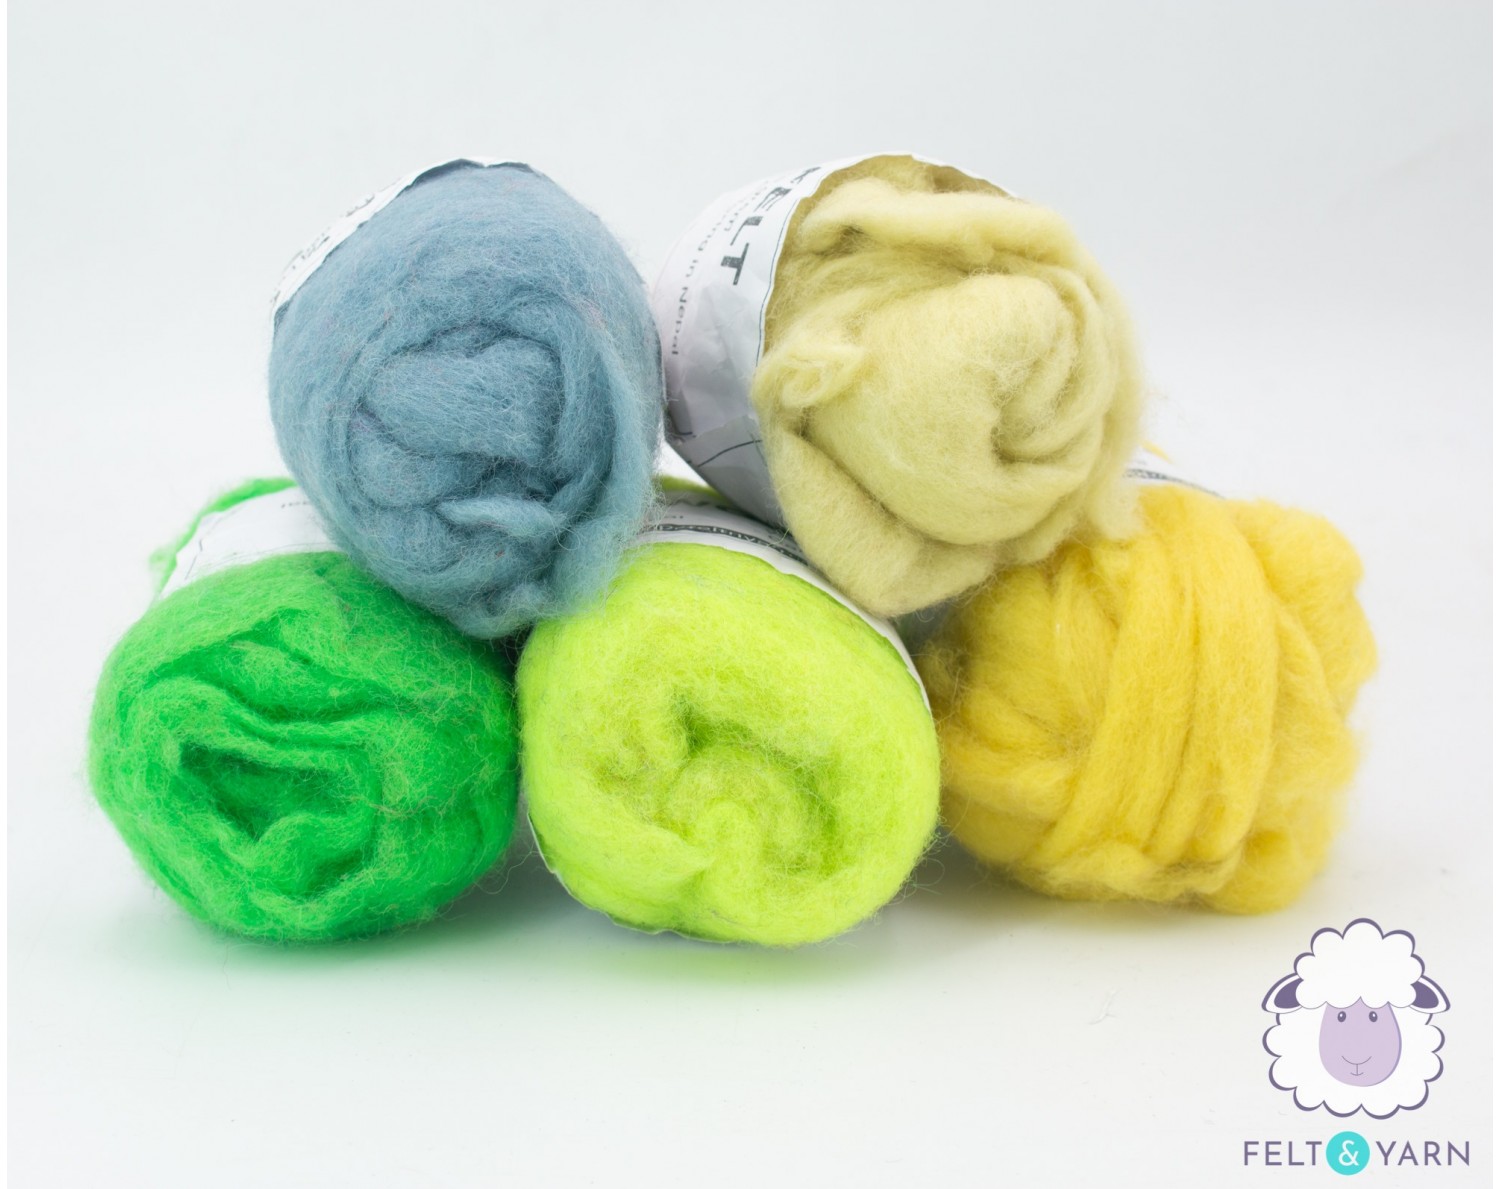 Colorful Felt Wool Roving Pack [100 G] -Felt & Yarn